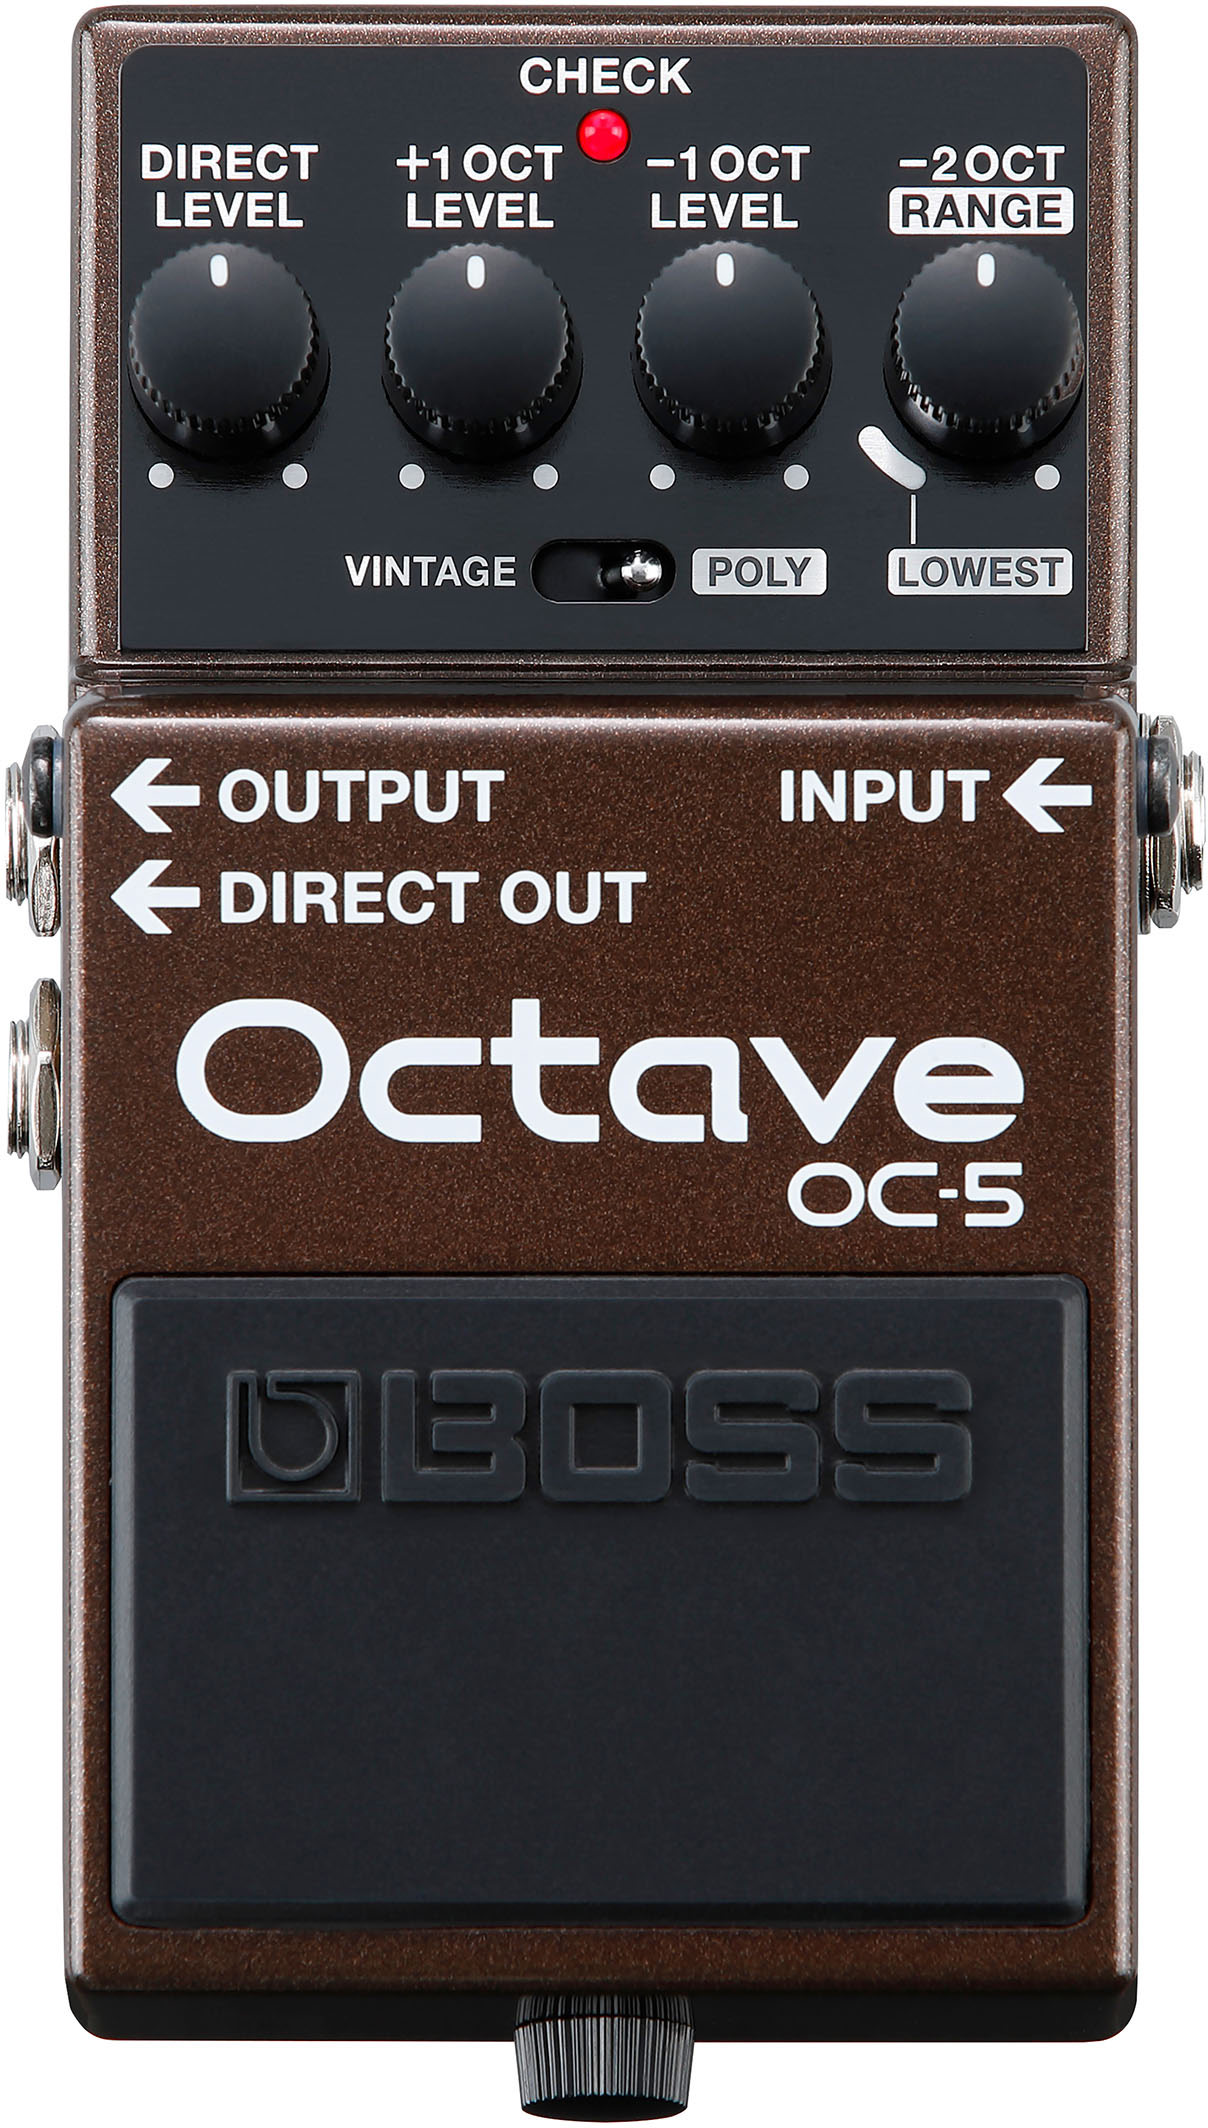 BOSS OC-5 Octave | guitarguitar